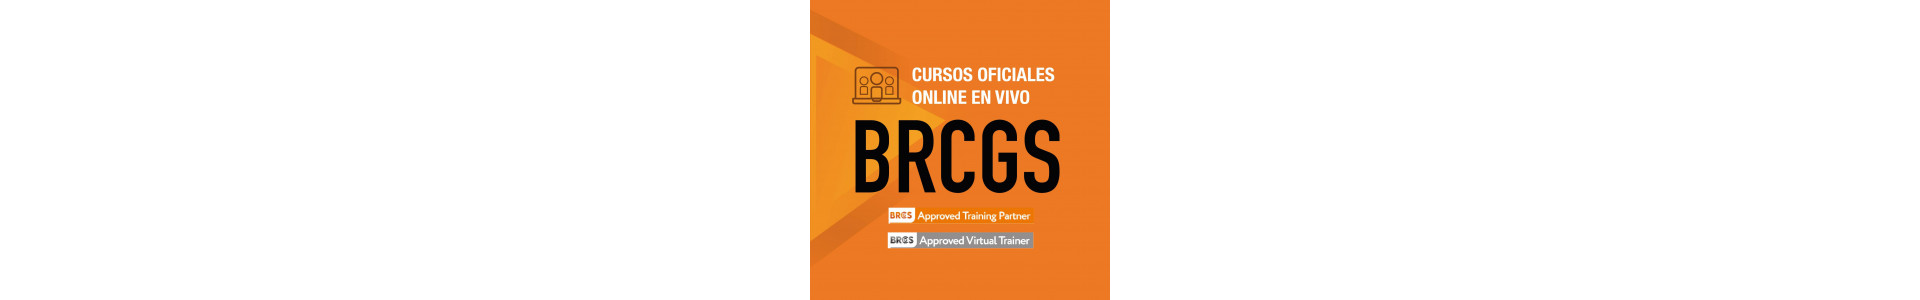 Cursos oficiales | Normas BRCGS, BRCGS Professional